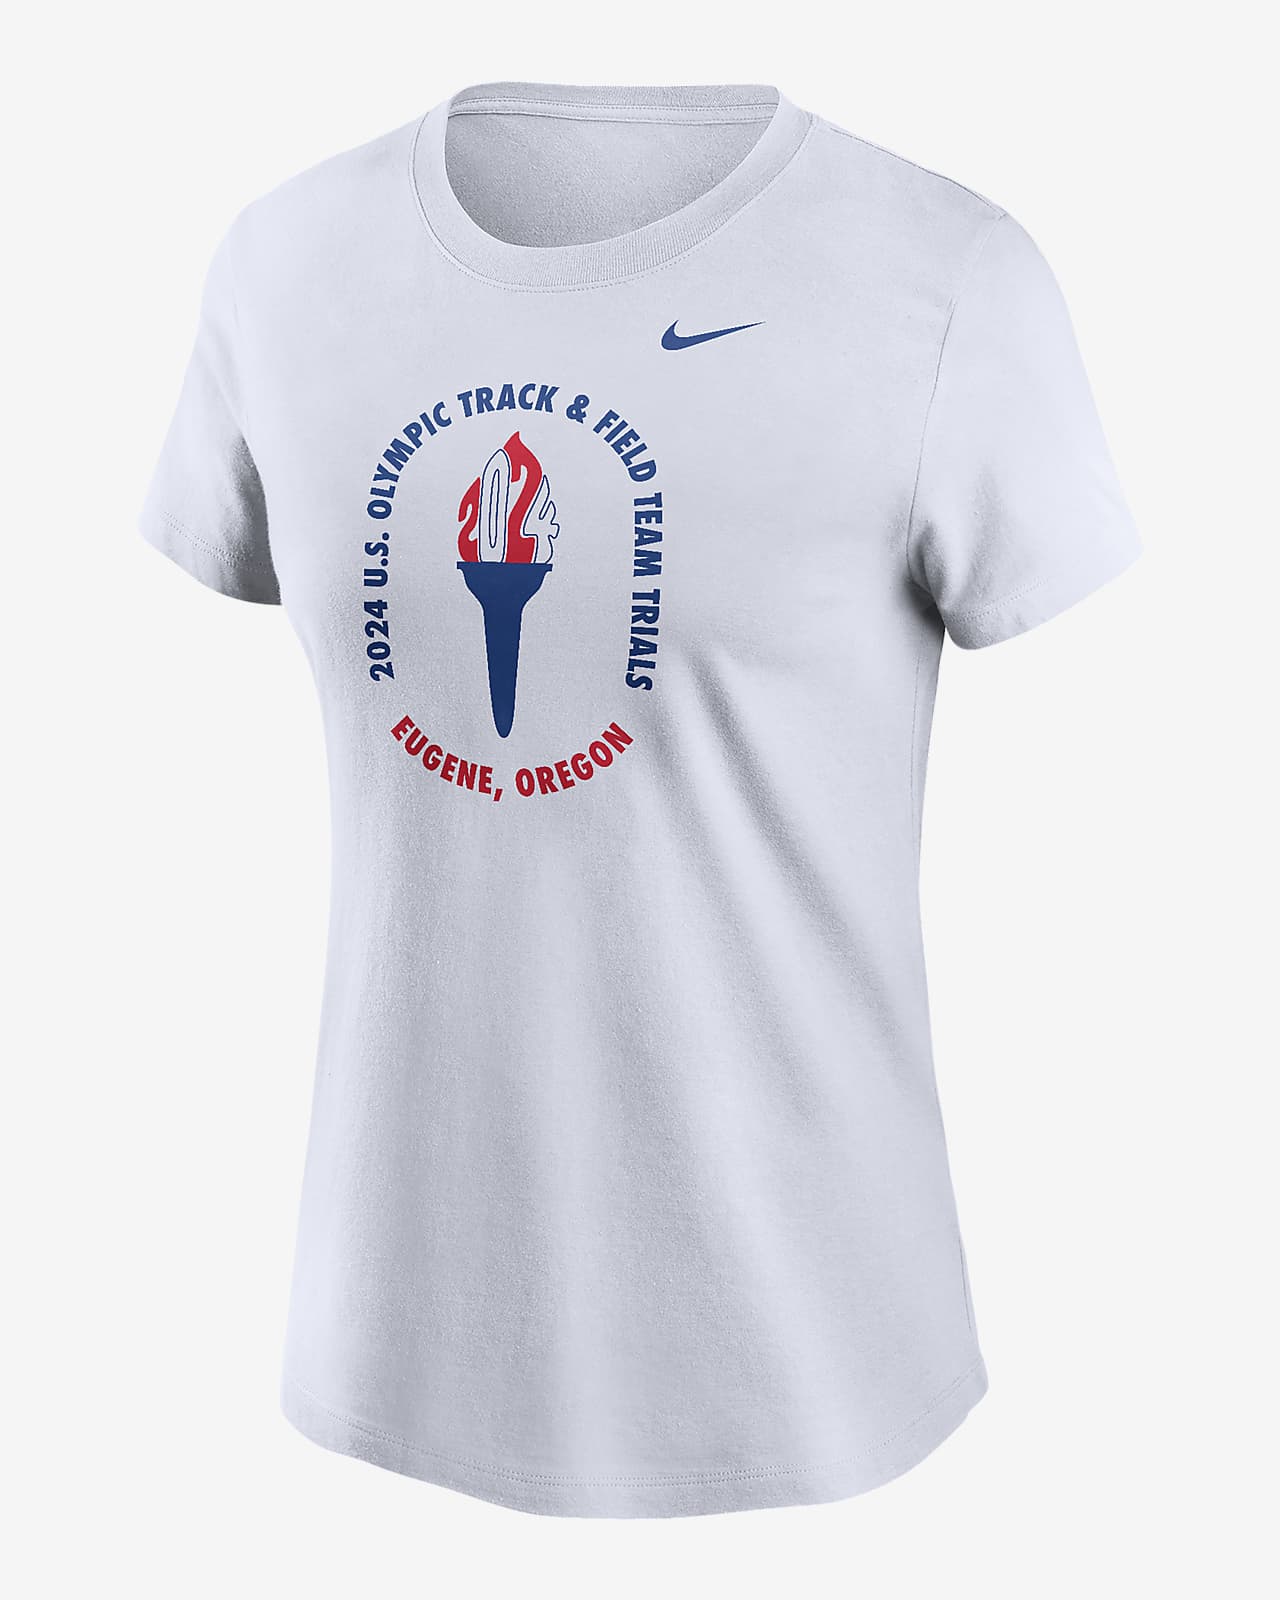 USATF Women's Nike Running T-Shirt